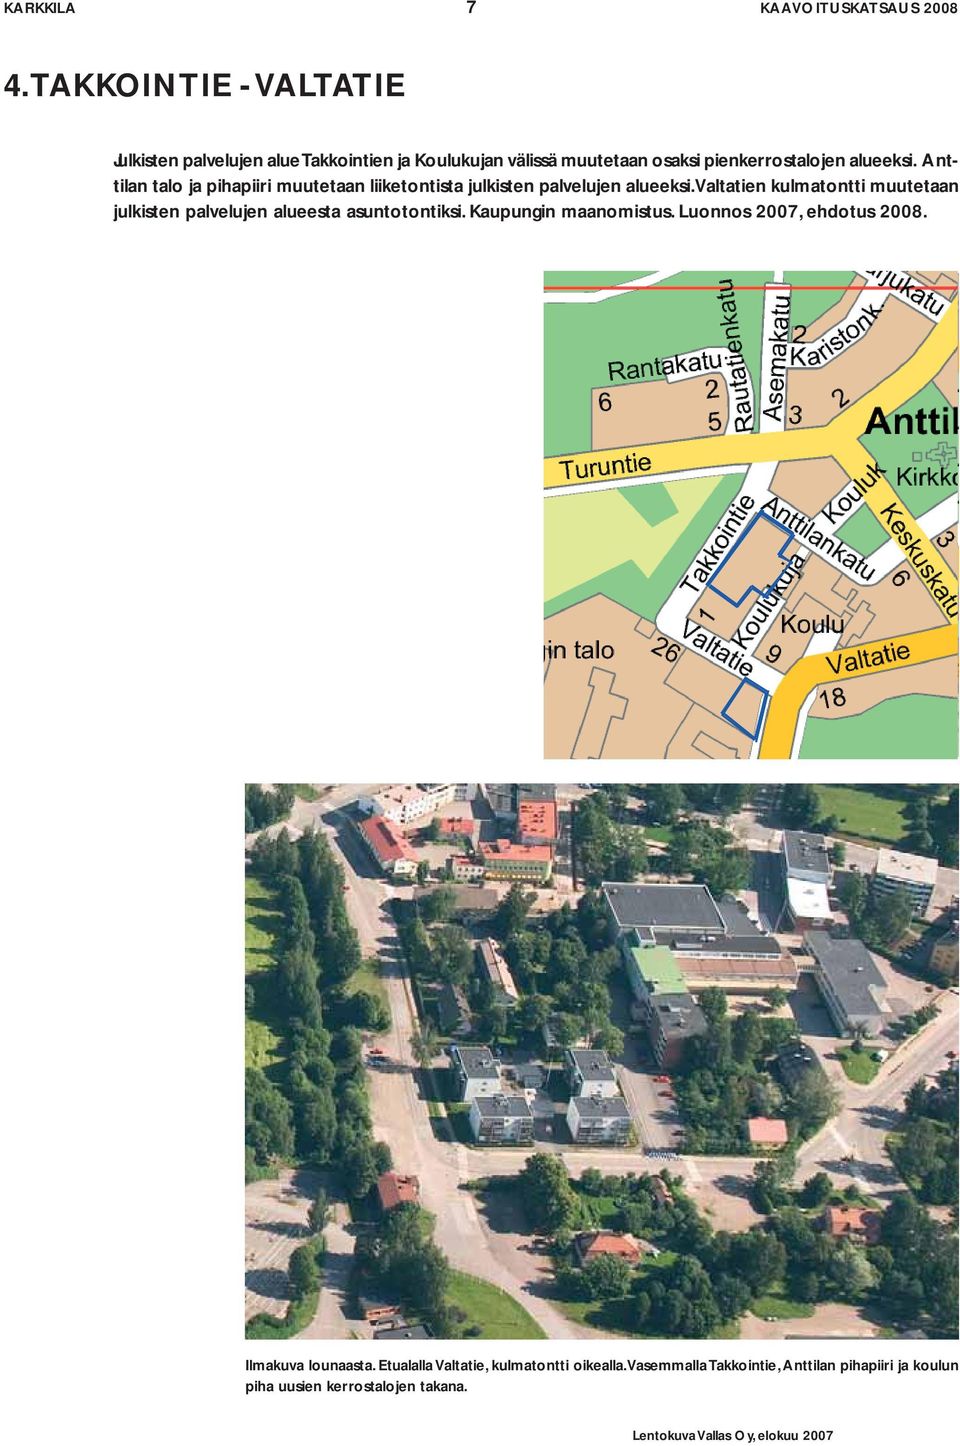 Anttilan talo ja pihapiiri muutetaan liiketontista julkisten palvelujen alueeksi.